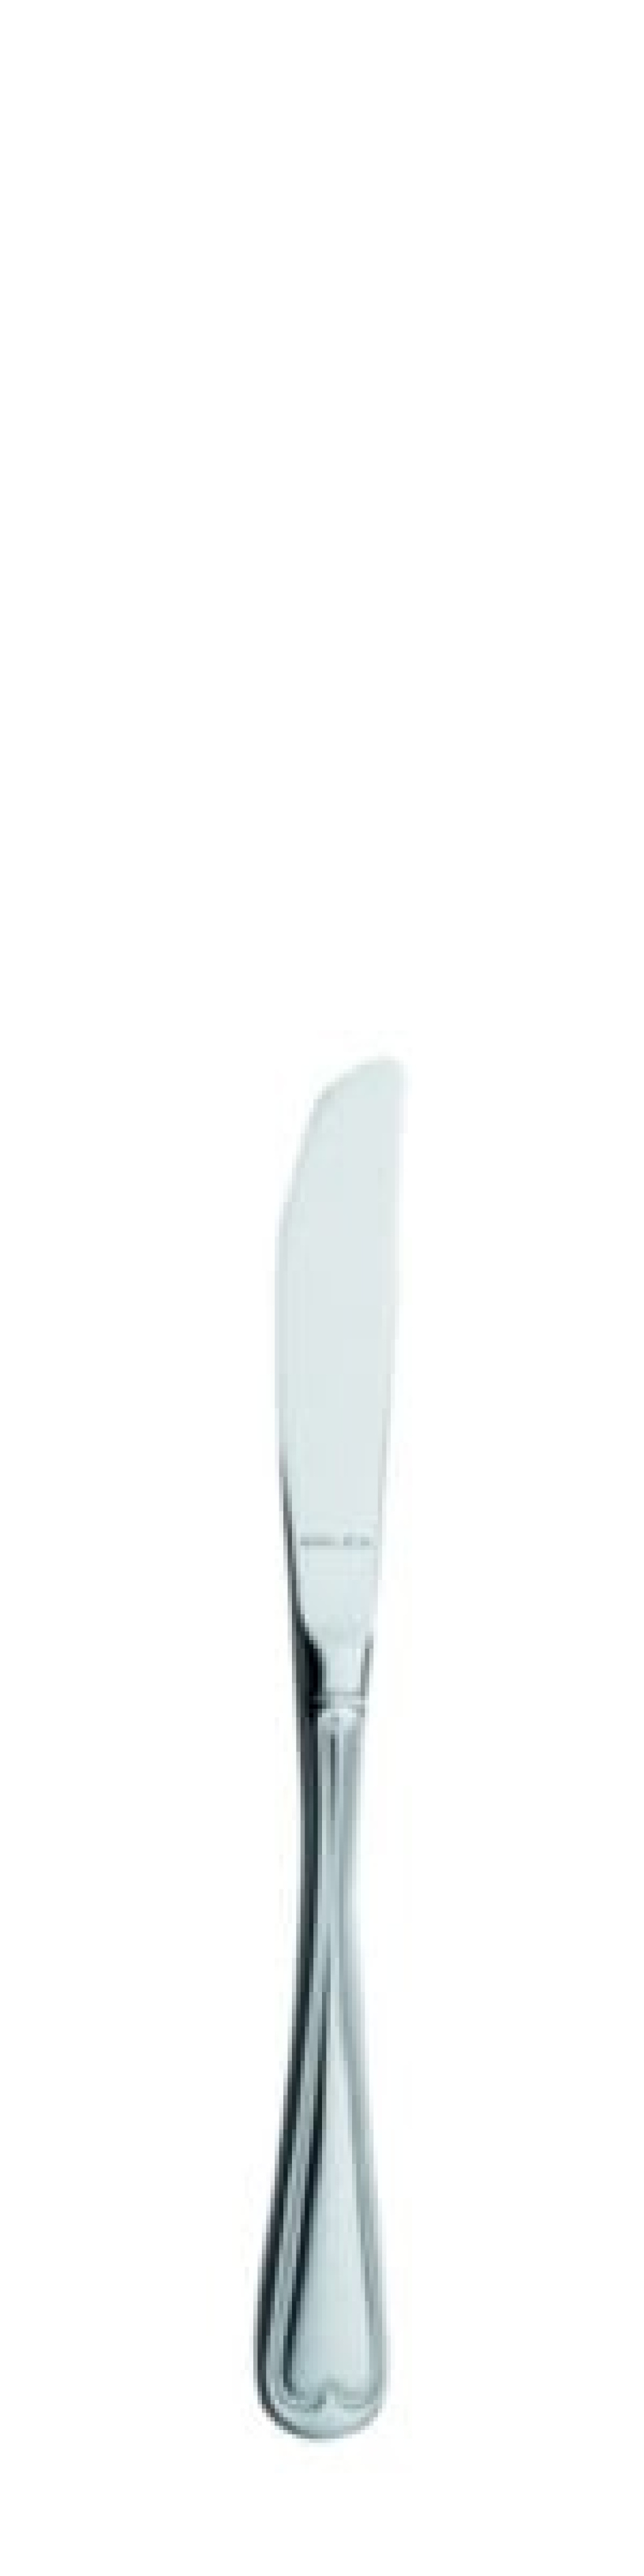 Nóż do masła Laila 170 mm - Solex w grupie Nakrycie stołu / Sztućce / Noże do masła w The Kitchen Lab (1284-21548)